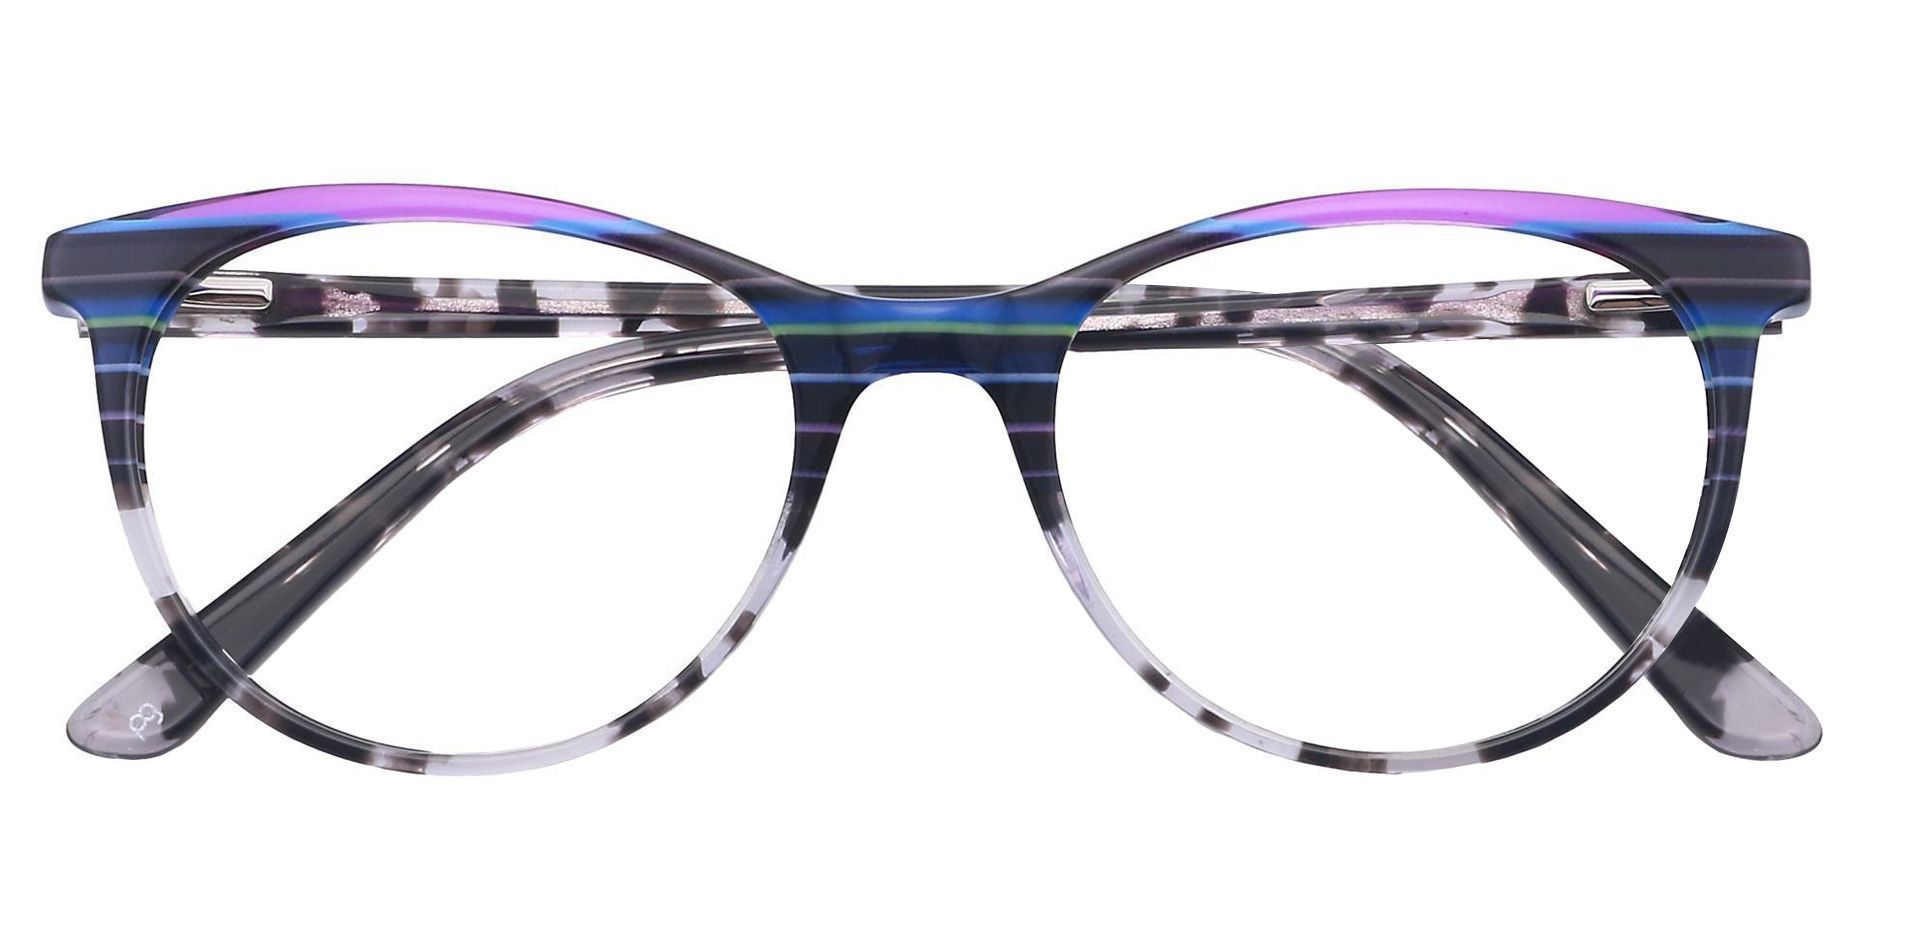 Patagonia Oval Non-Rx Glasses - Multicolored Blue Stripes  Multicolor